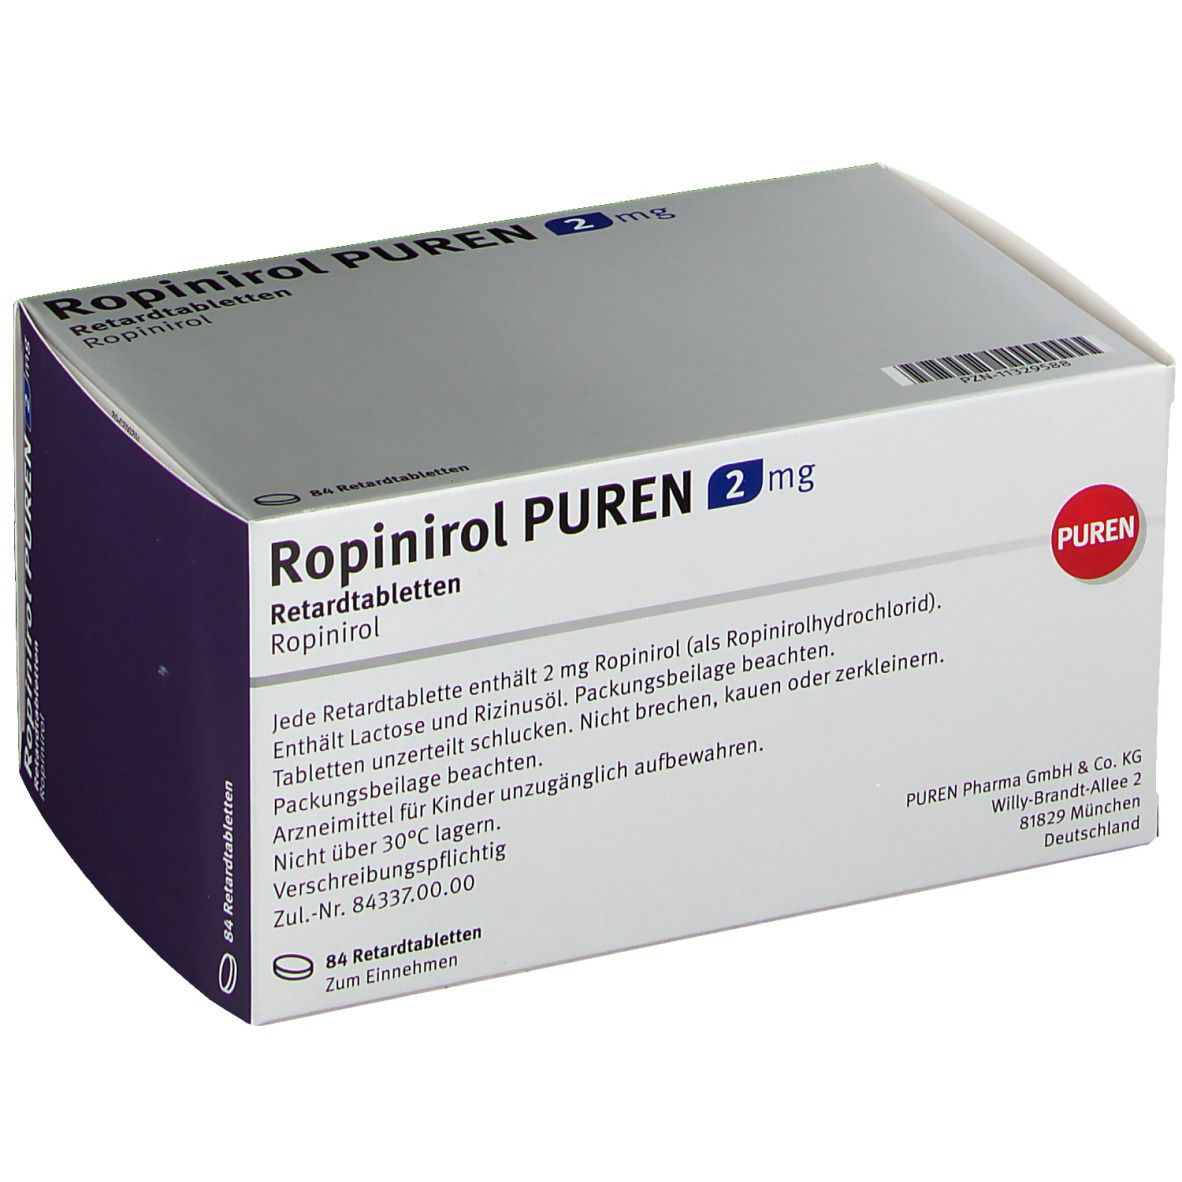 ROPINIROL PUREN 2 mg Retardtabletten